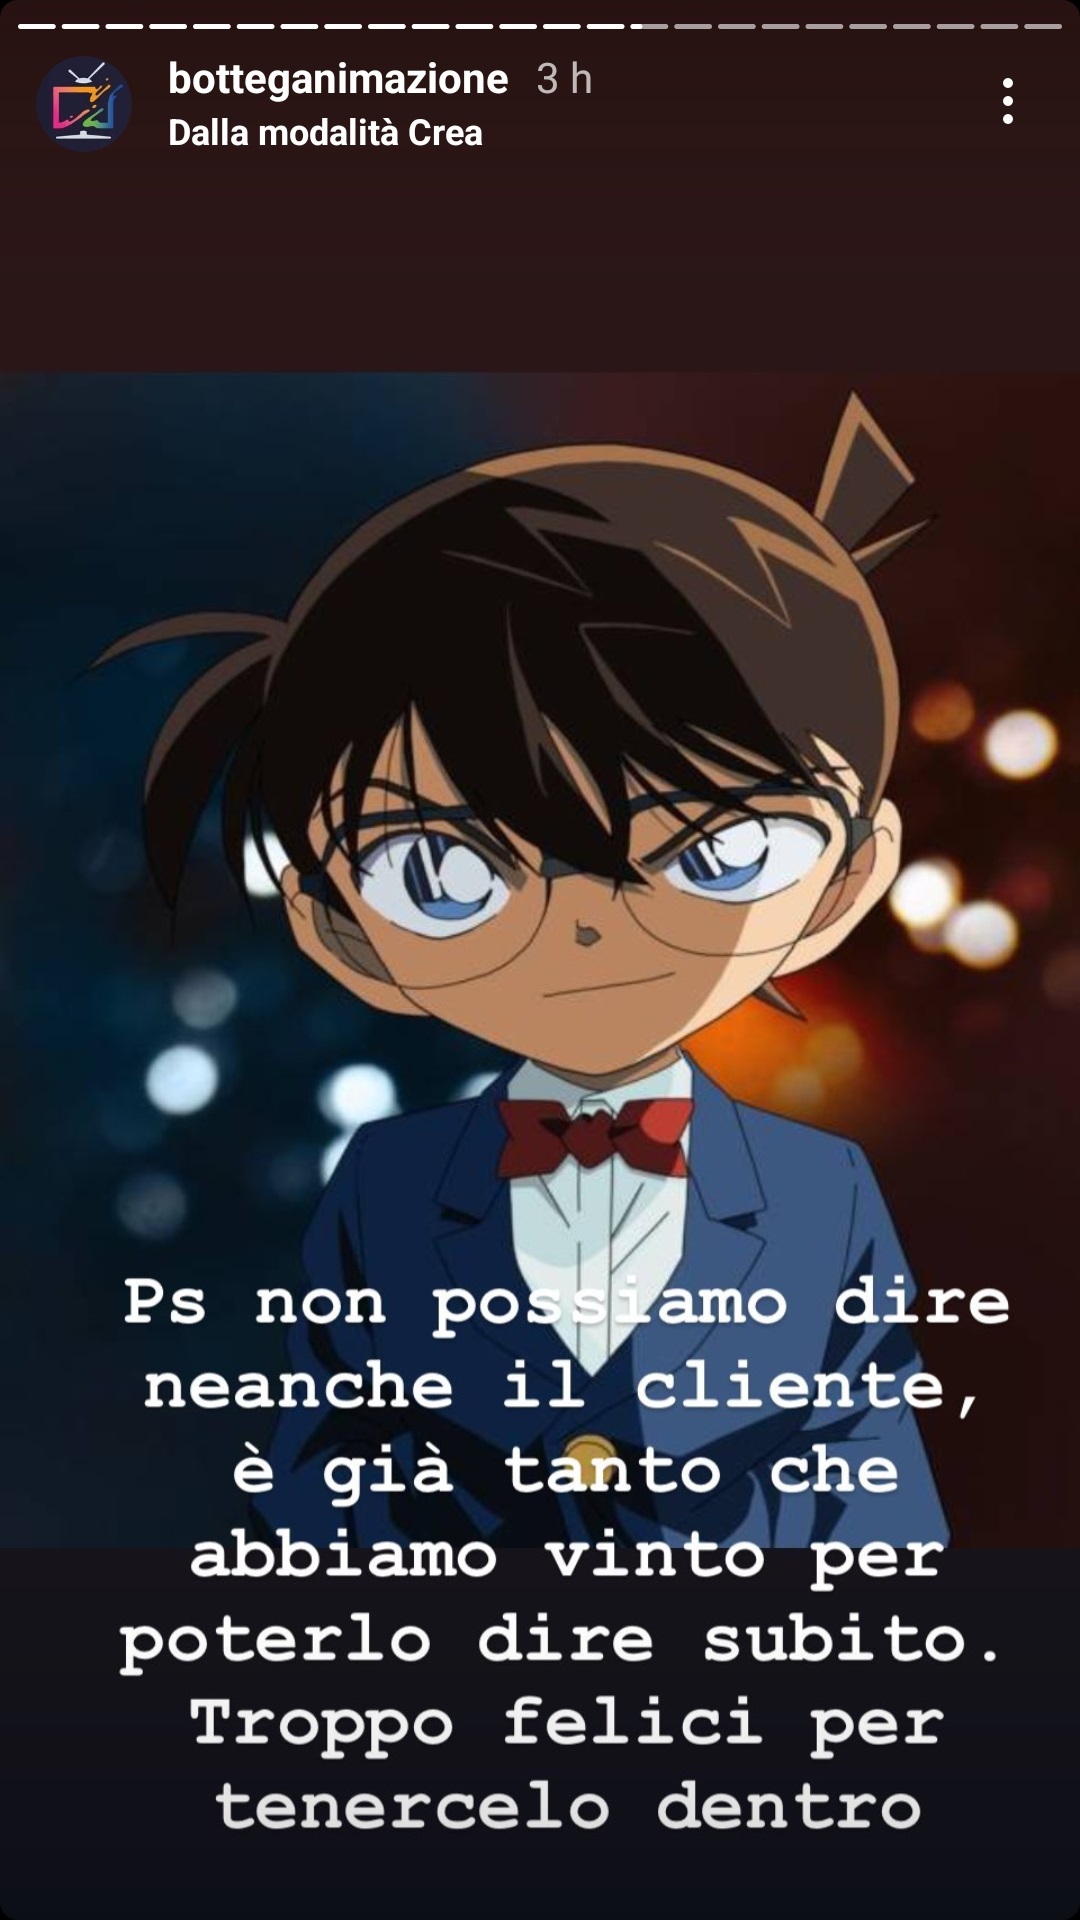 Detective Conan torna in Italia, l'annuncio - Stories Botteganimazione 6